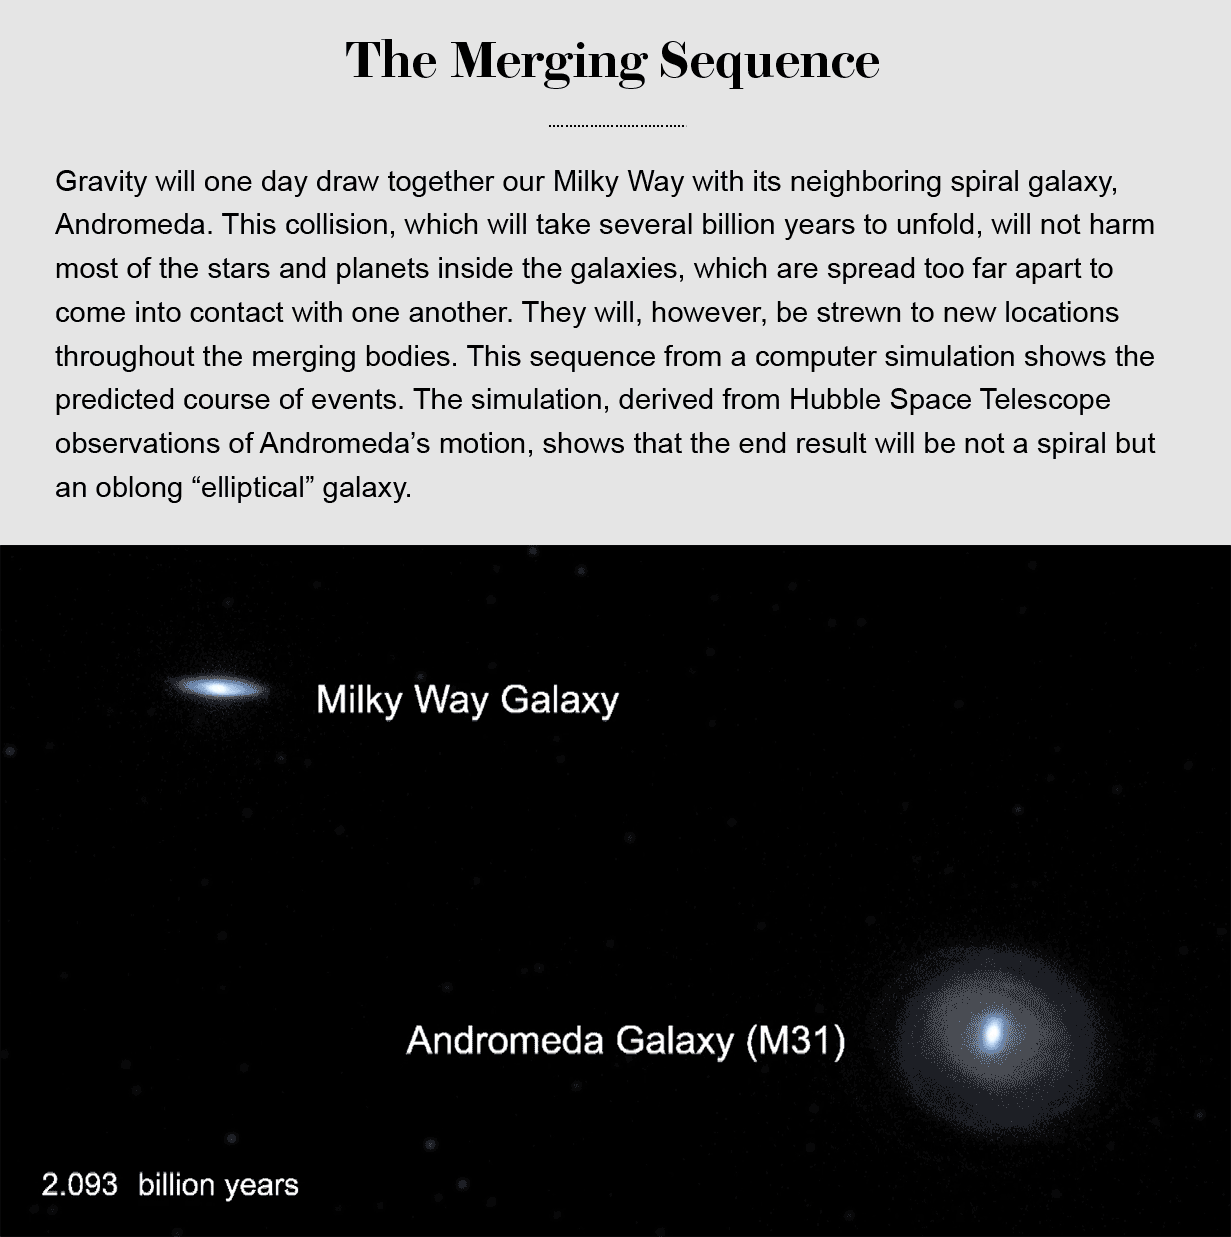 模拟显示了银河系和仙女座将如何在20亿年内合并，最终形成一个单一的椭圆形星系。